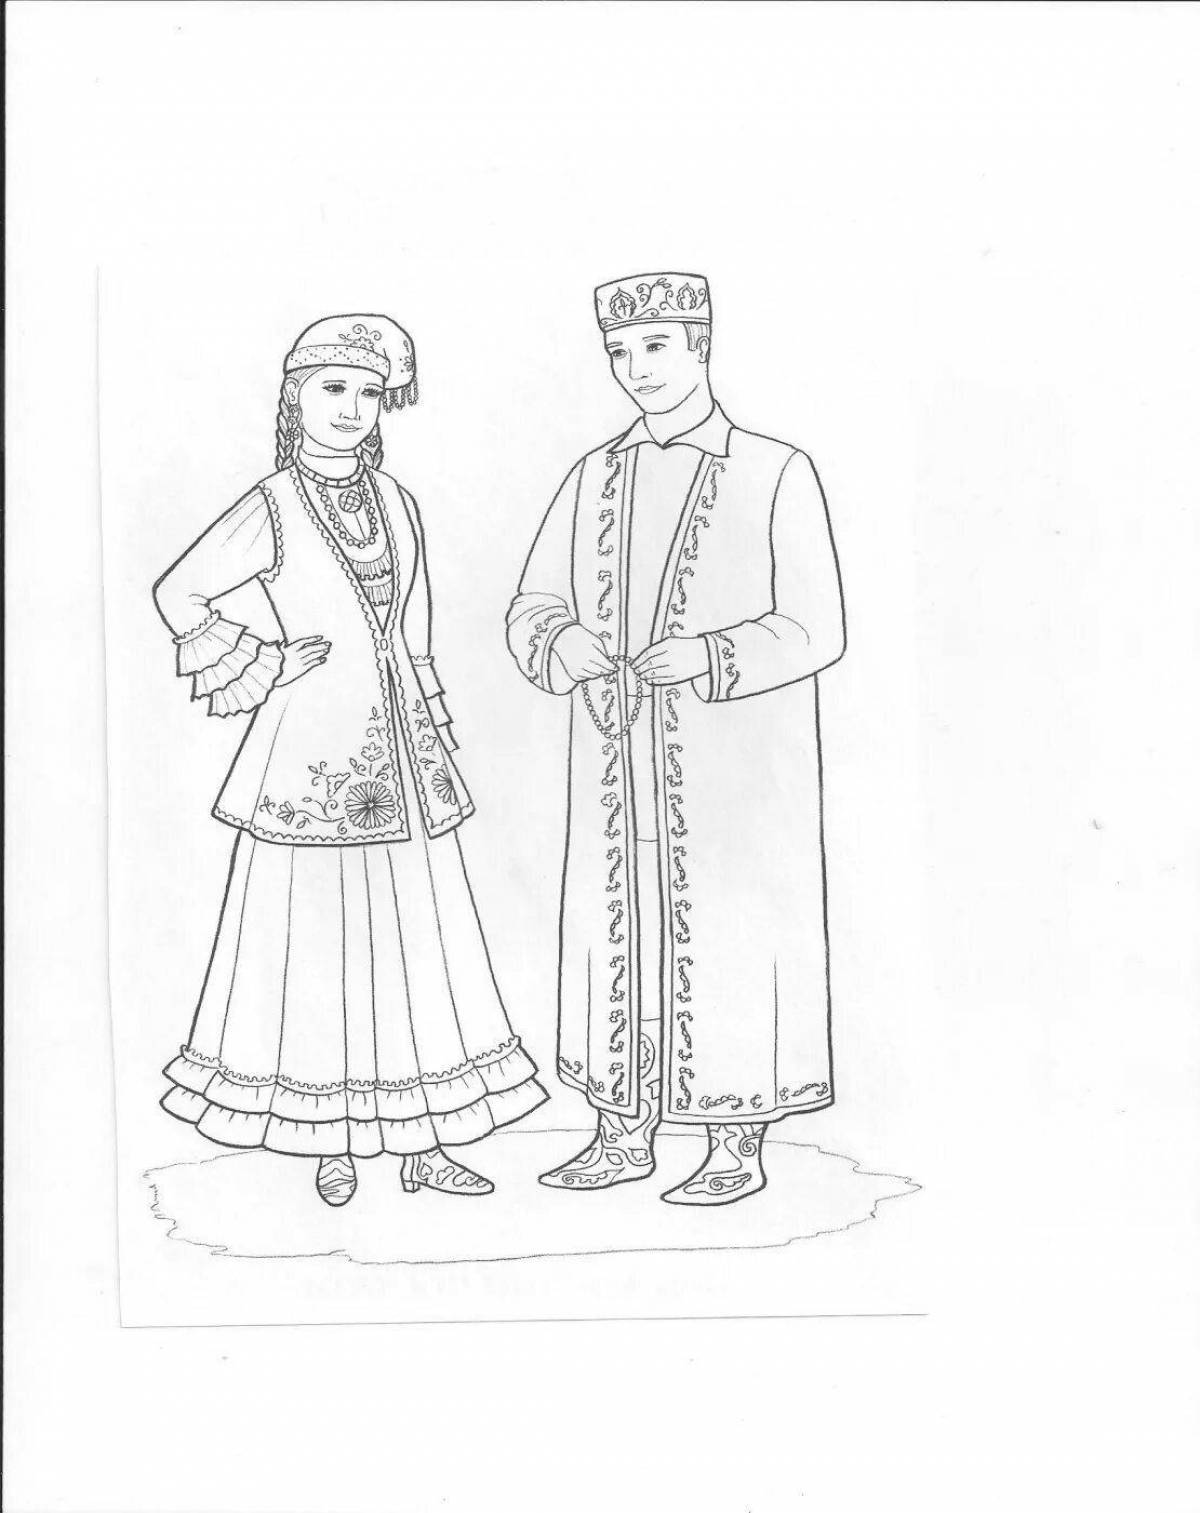 Башкирский национальный костюм башкир раскраска